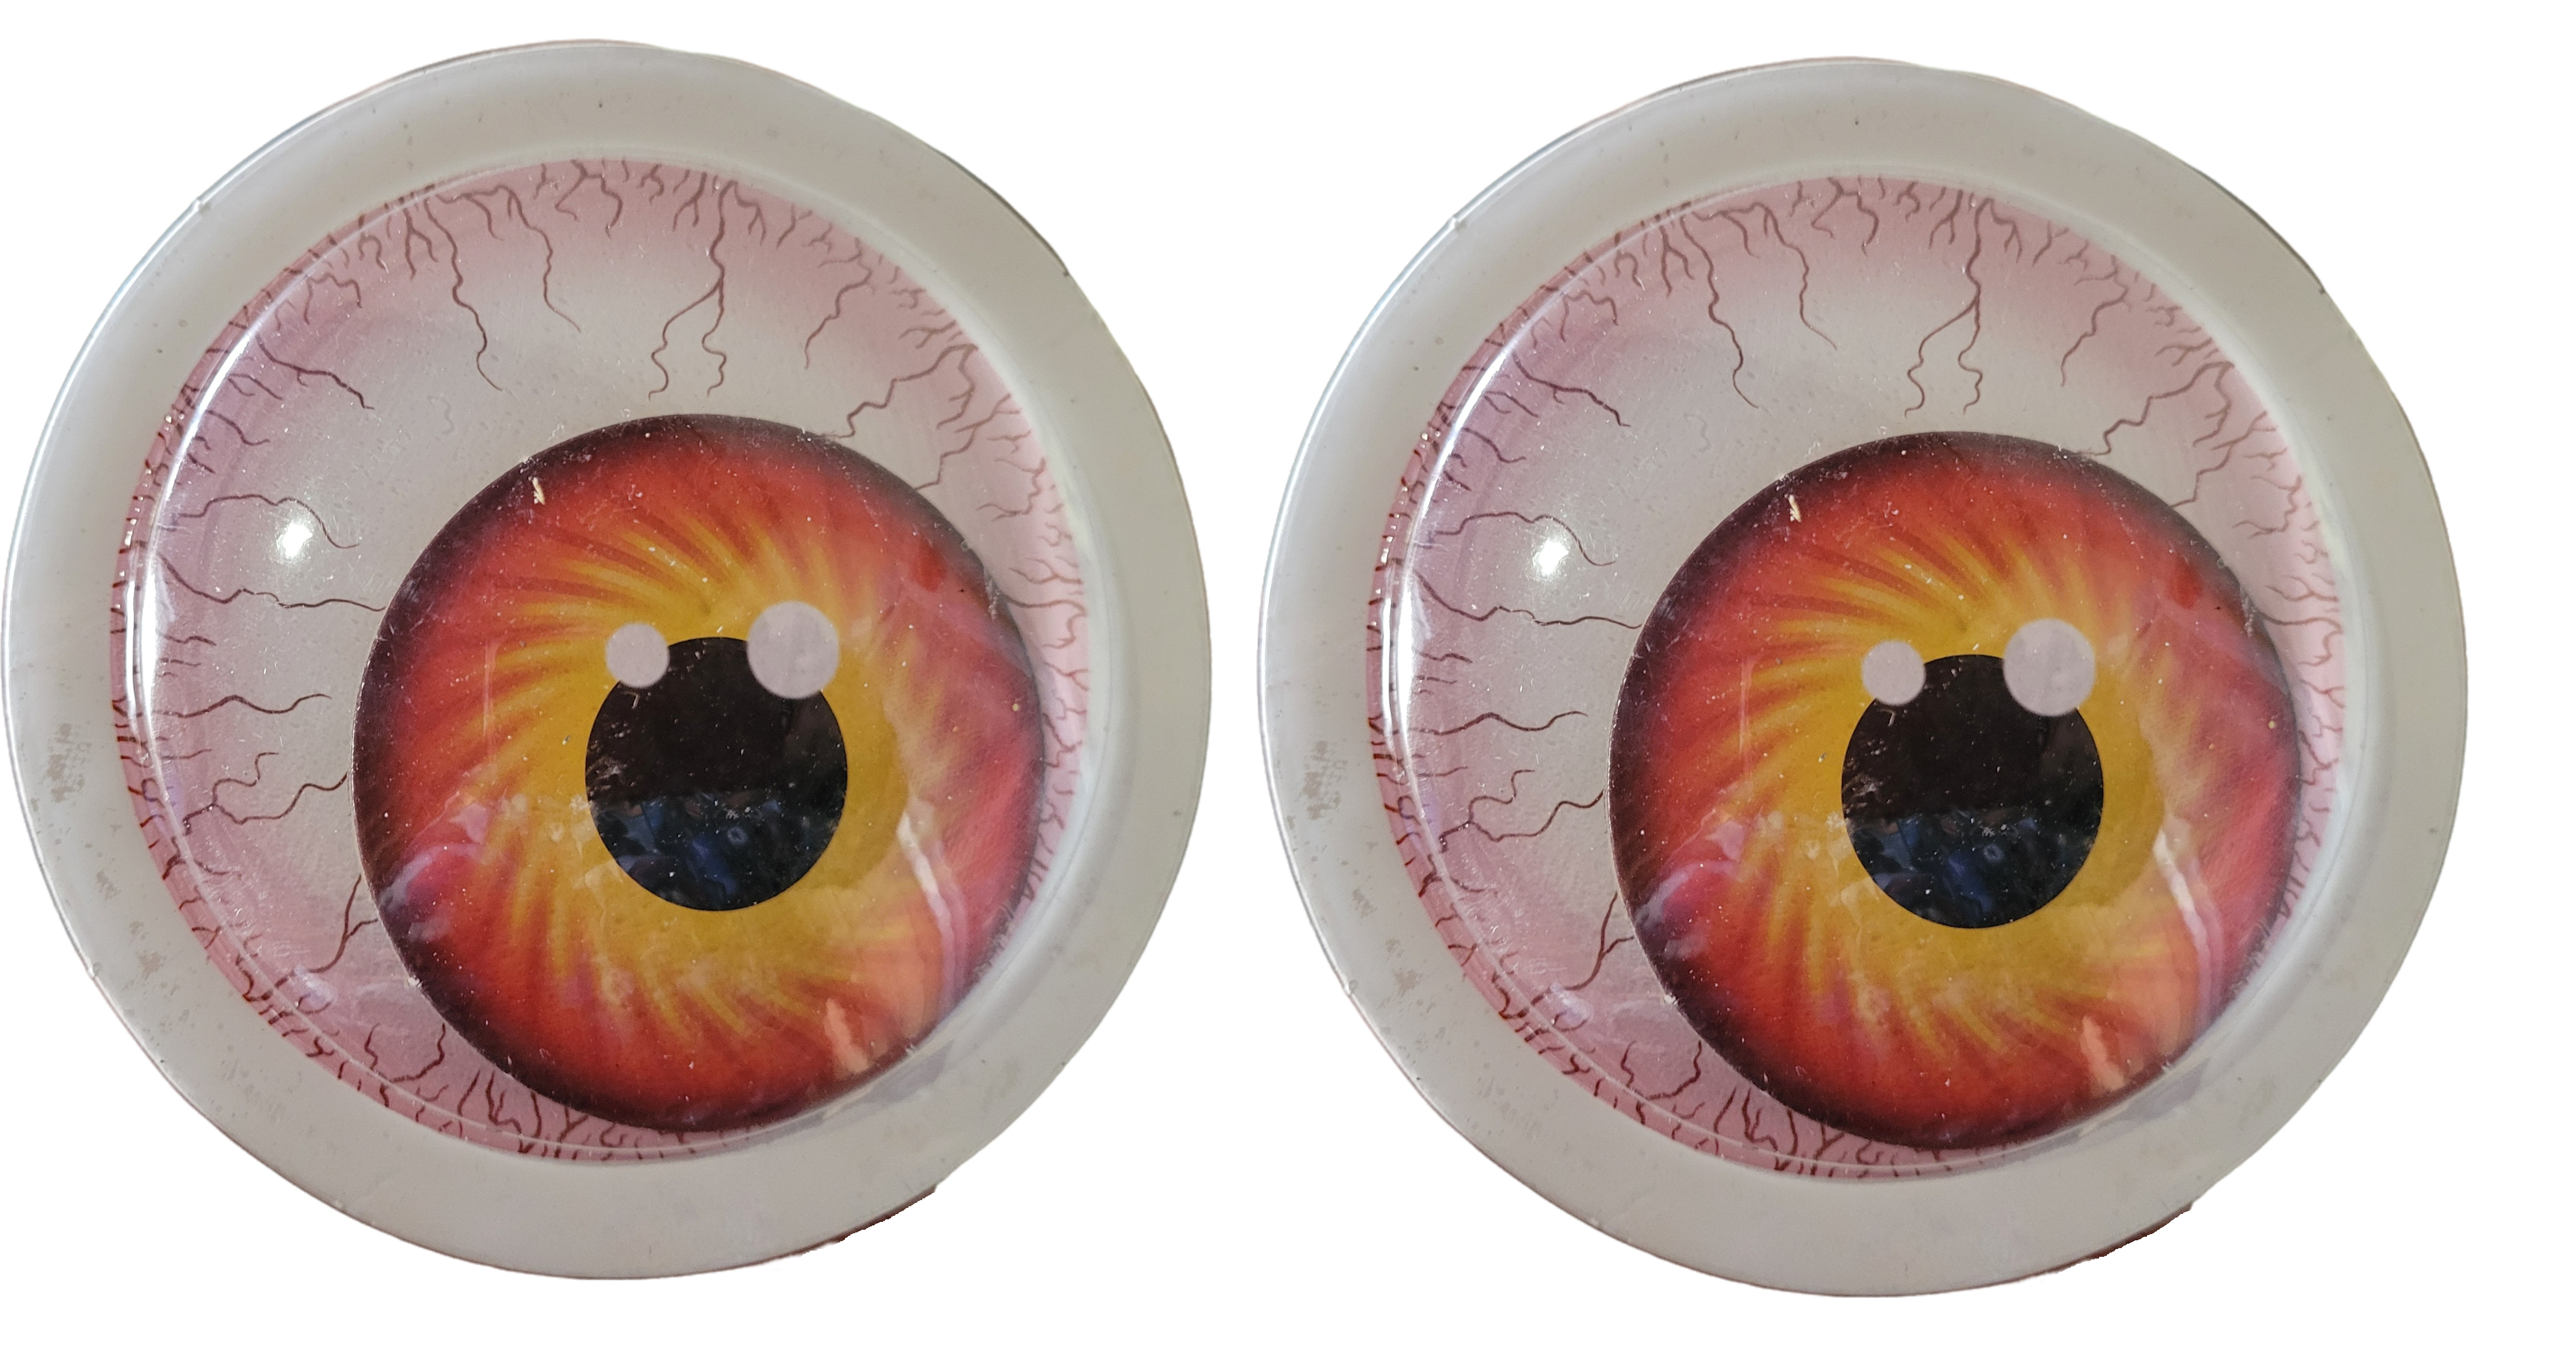 4,5 Zoll riesige Google Eyes große wackelige Augen selbstklebend zum Selbermachen Kunsthandwerk - Bild 1 von 1